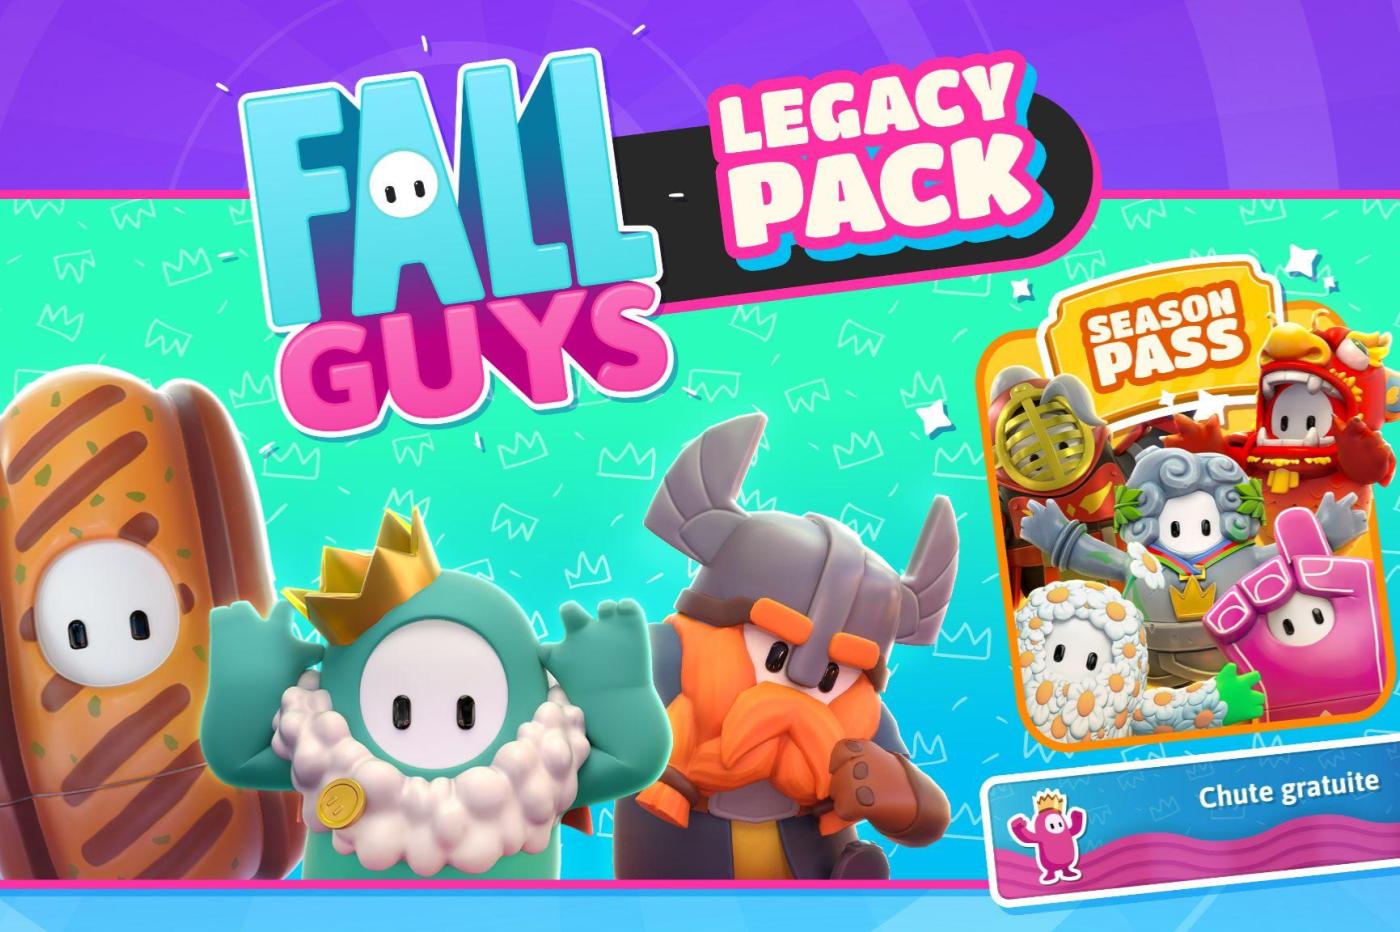 Das Werbebild des Fall Guys Legacy Packs, das den Besitzern des Originalspiels gegeben wird.